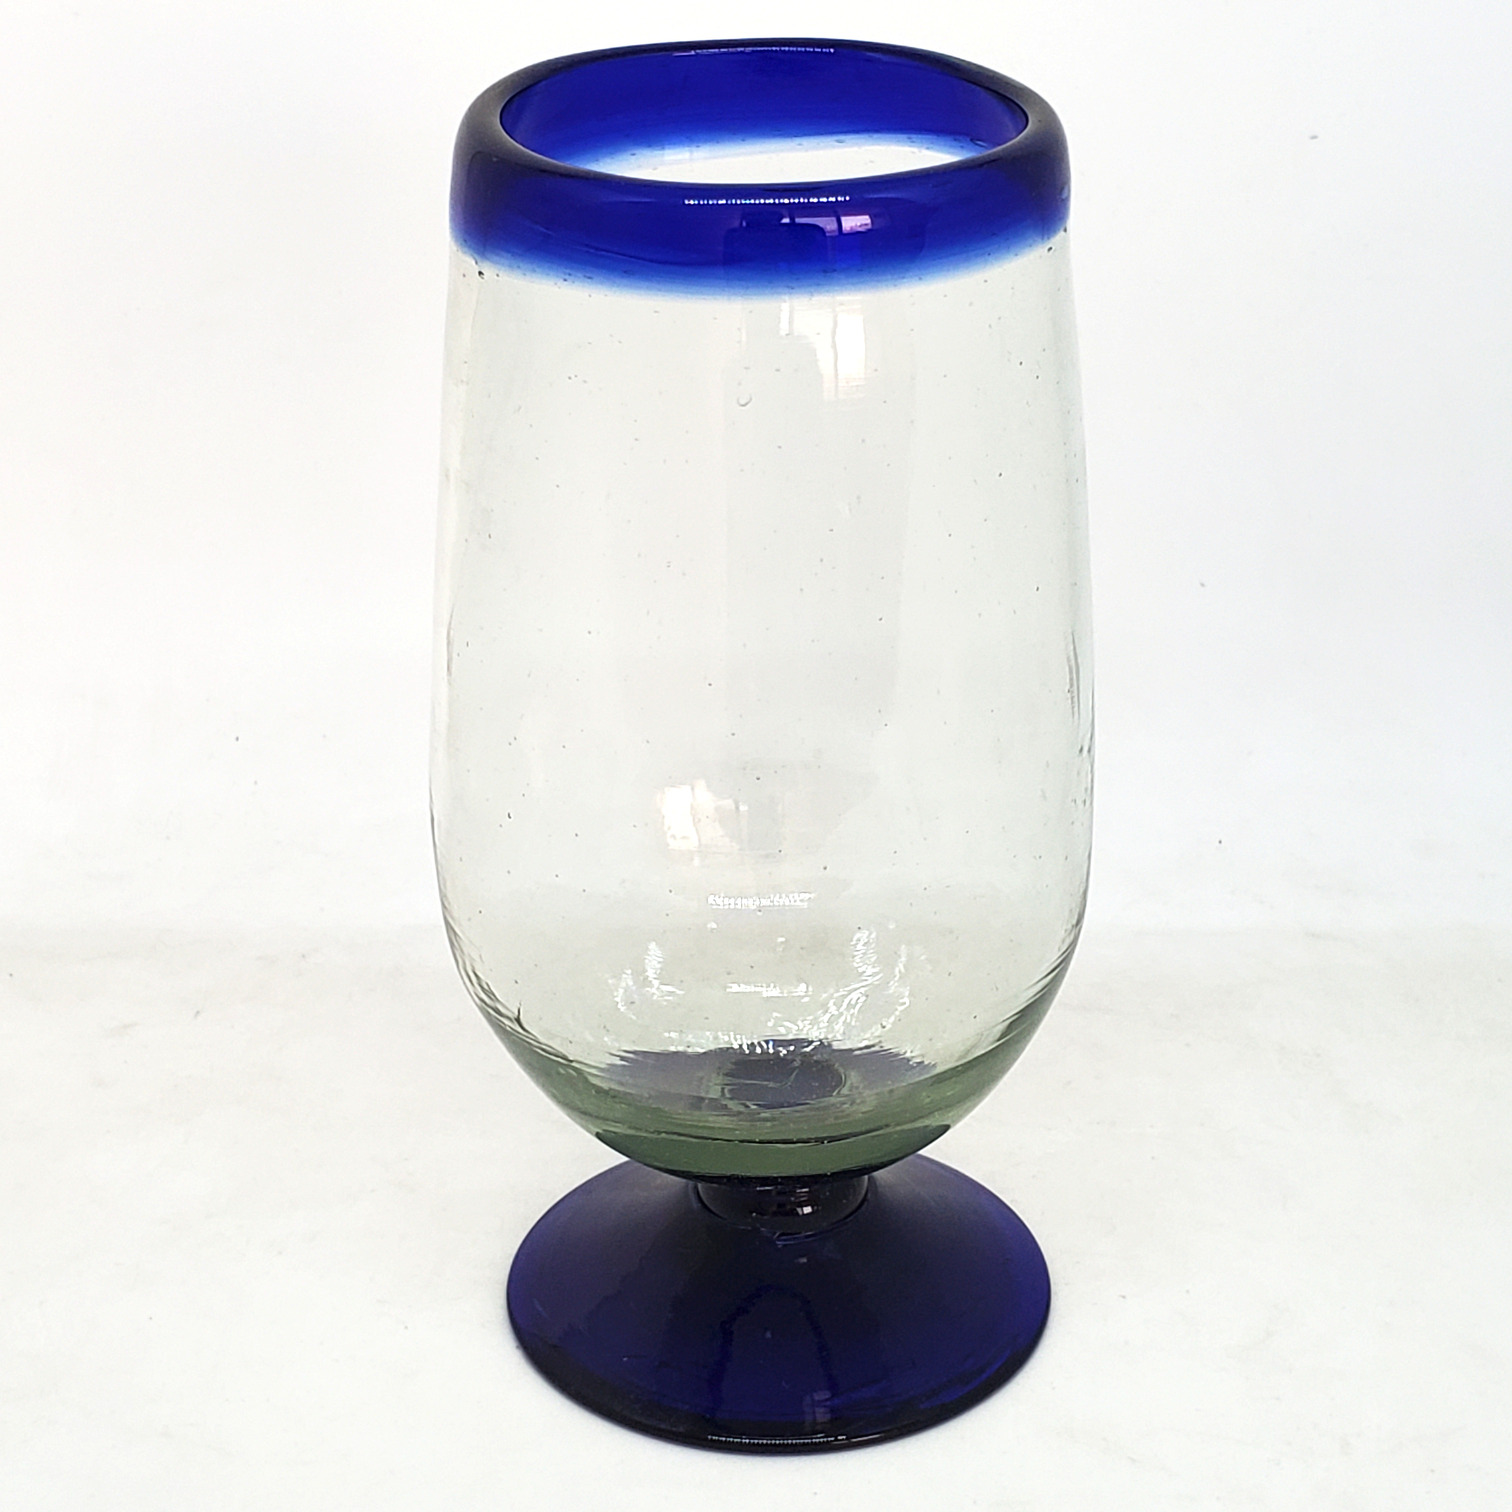 Borde de Color al Mayoreo / copas para agua grandes con borde azul cobalto / Éstas copas altas para agua embelleceran su mesa y le darán un toque festivo. Hechas de vidrio auténtico reciclado y soplado a mano.